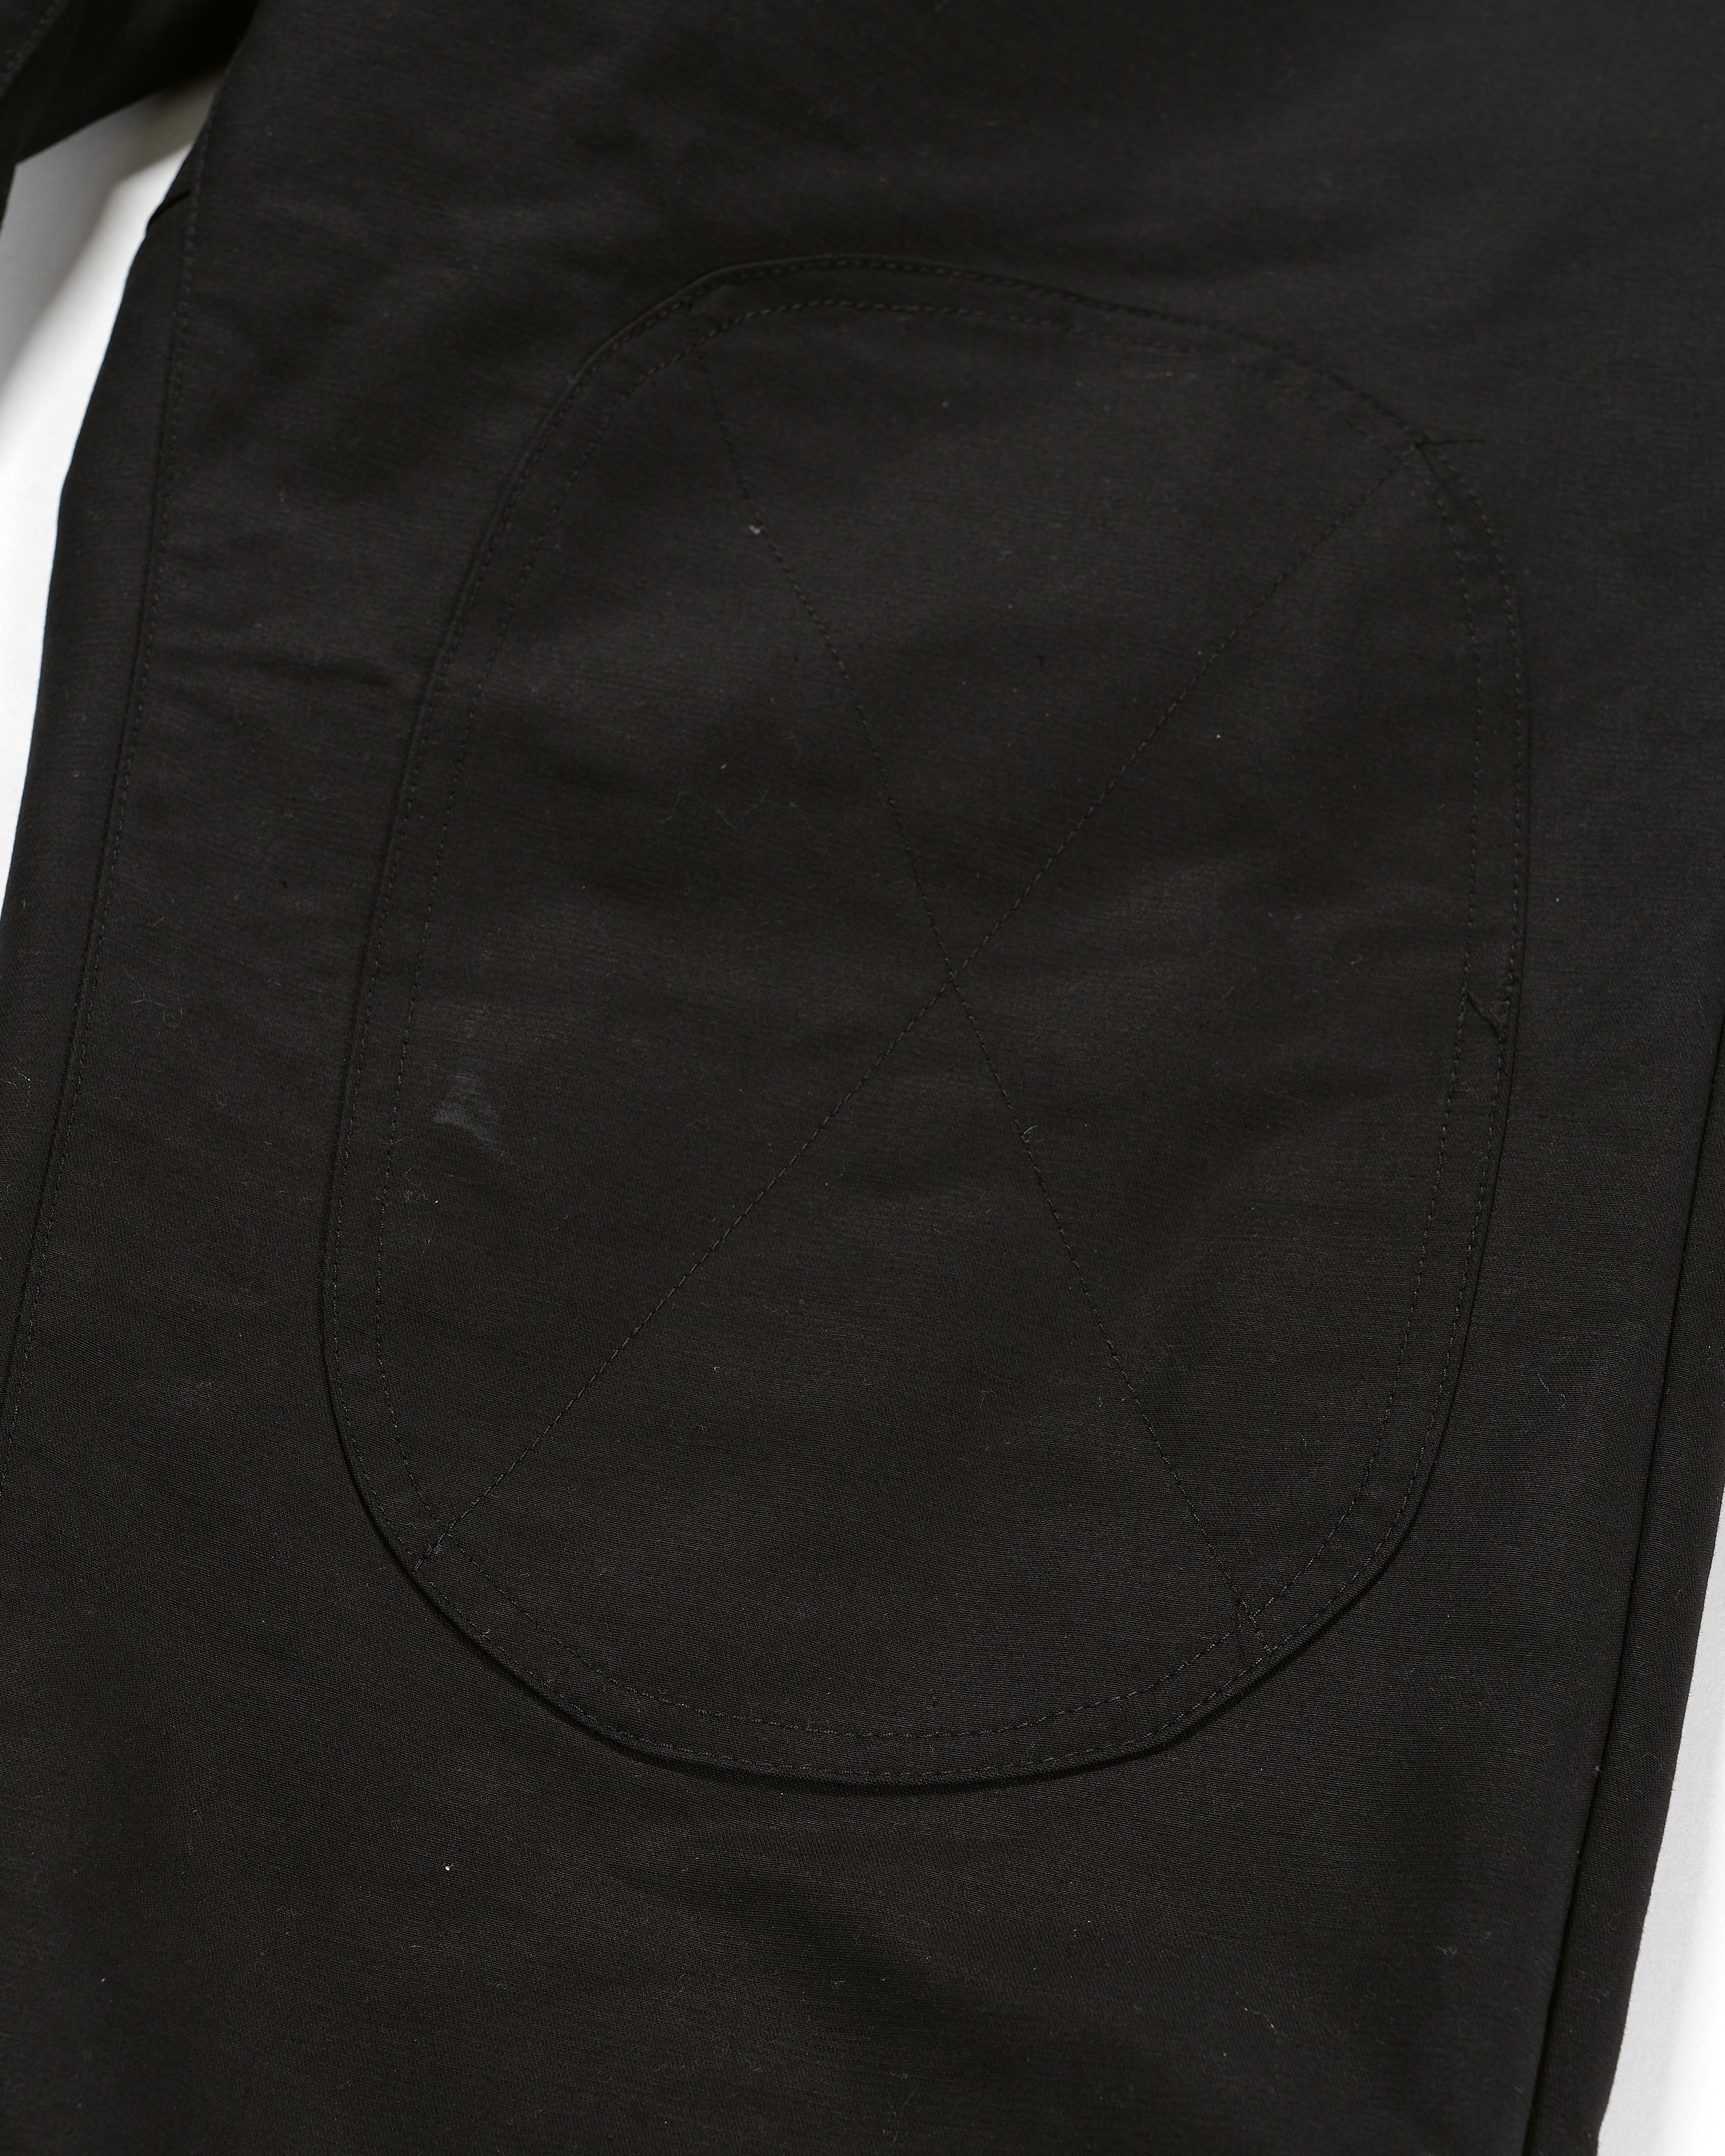 Airborne Pant - Black Cotton Double Cloth